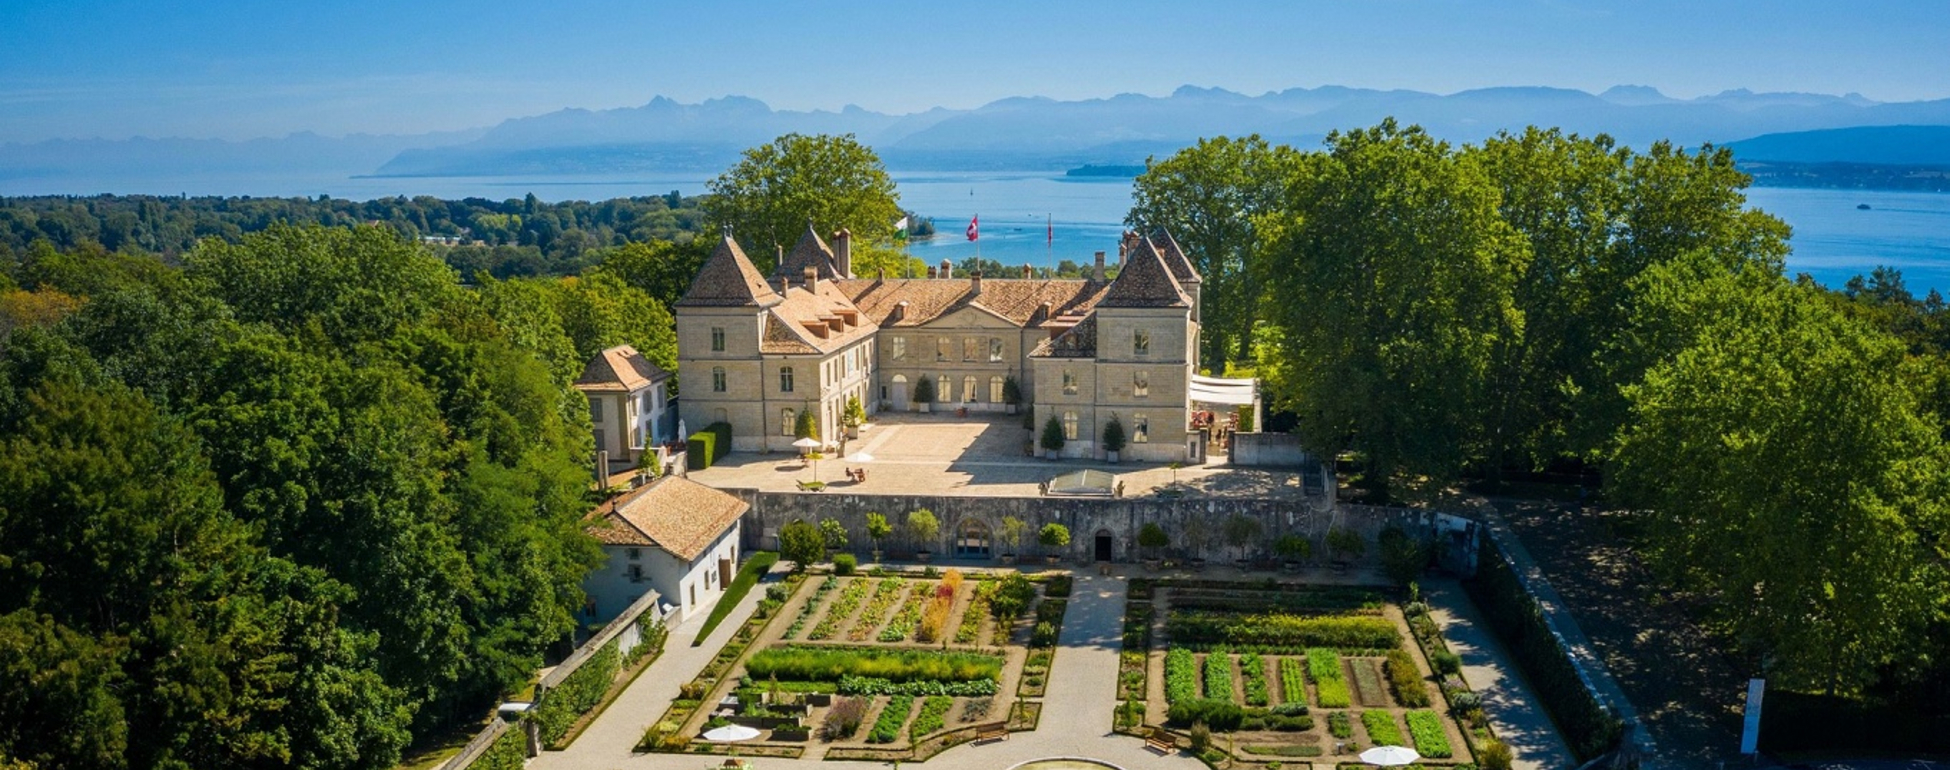 Château de Prangins